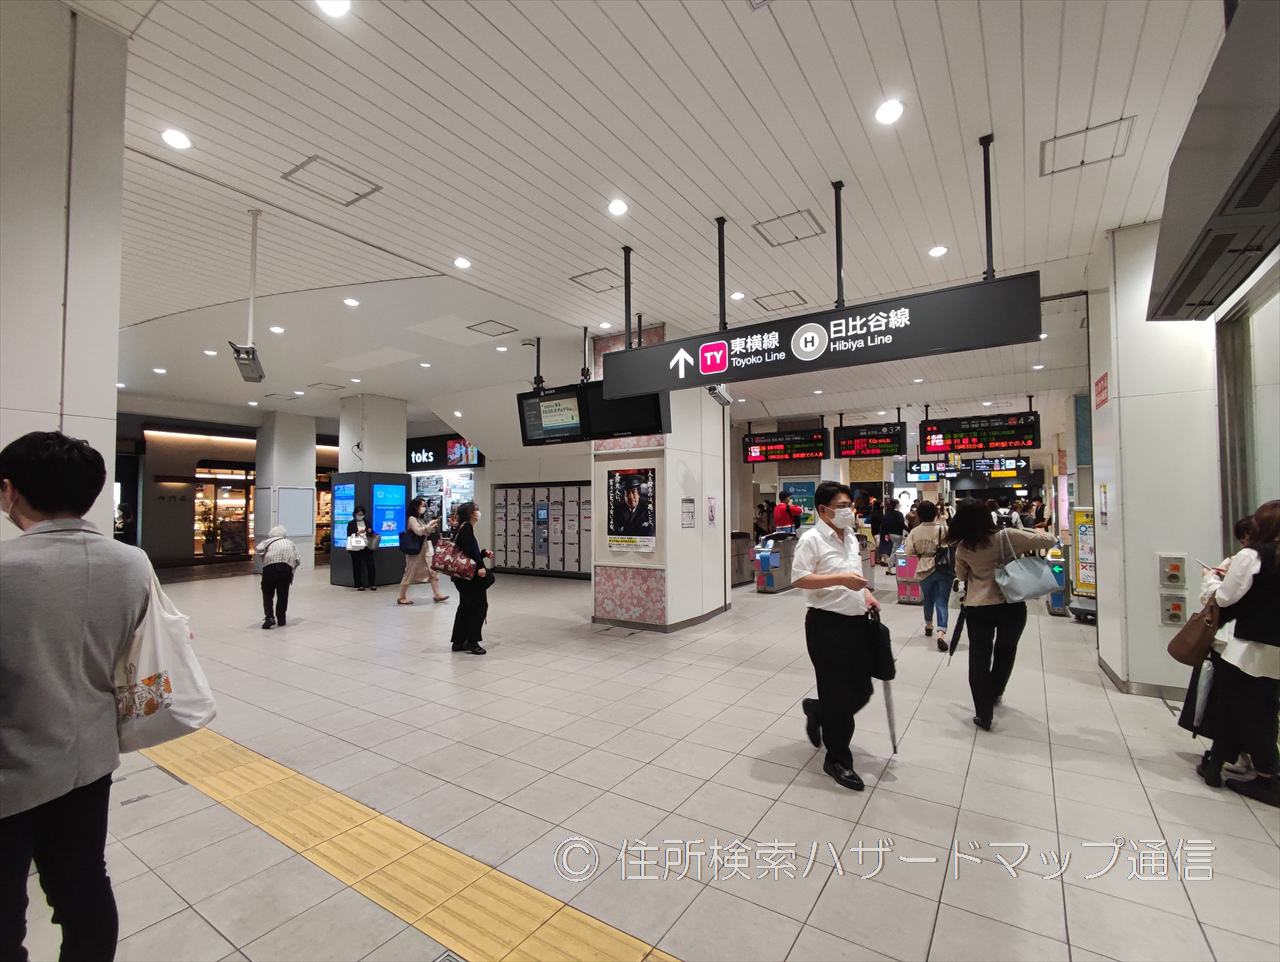 中目黒駅の改札